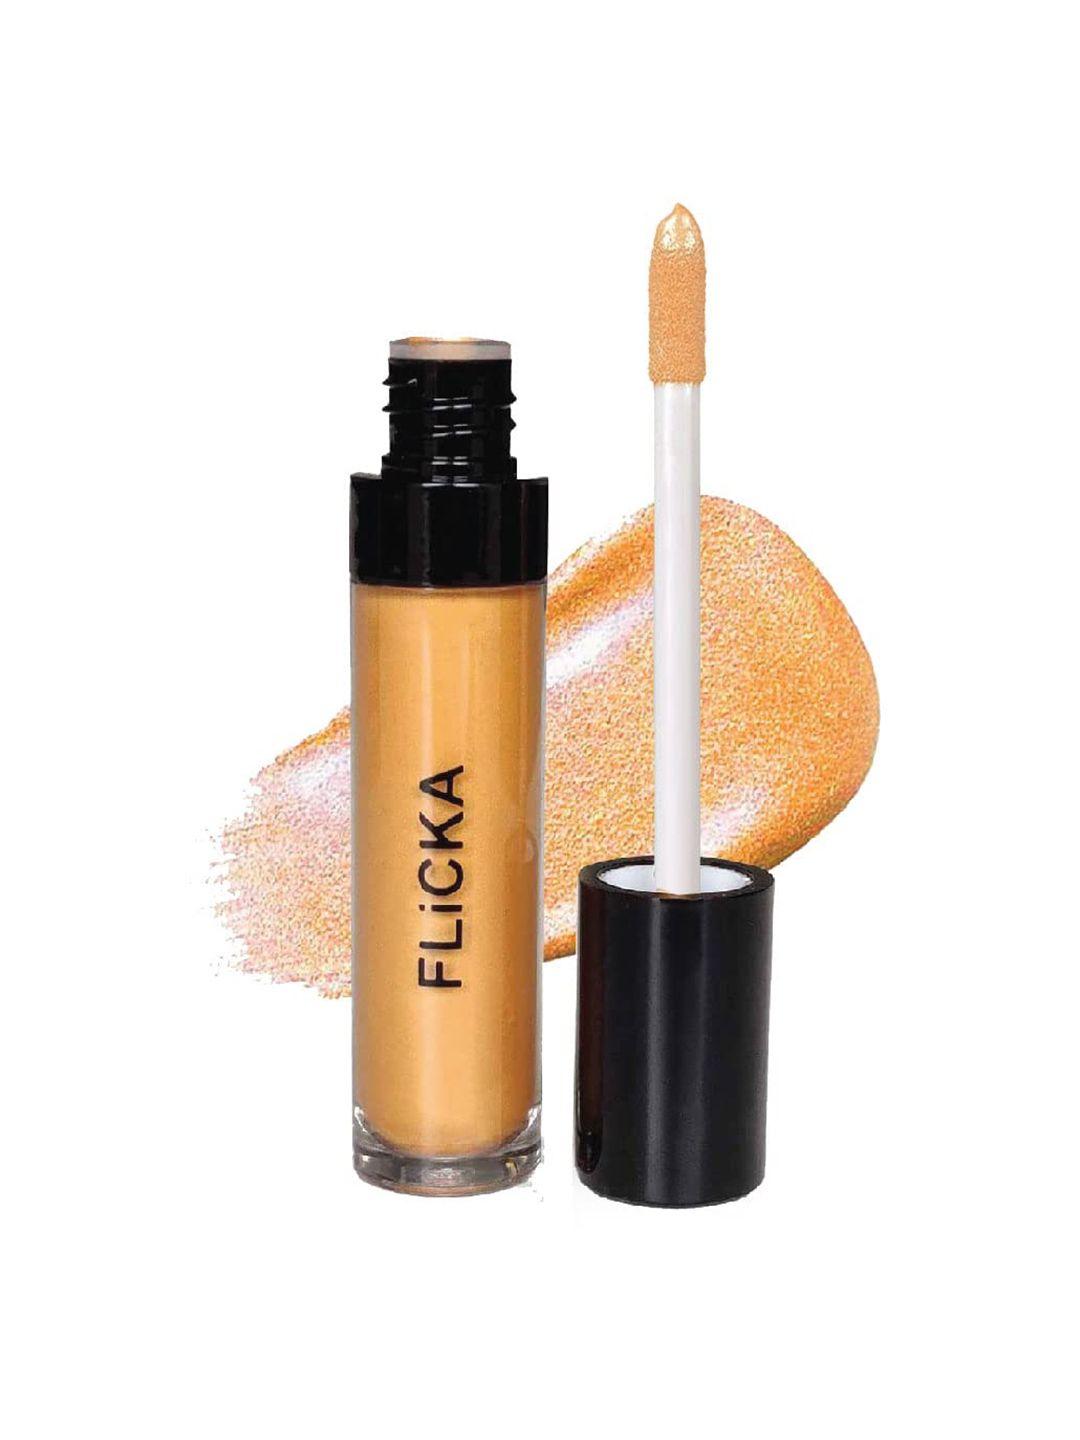 flicka high on shine liquid highlighter 9ml - gold